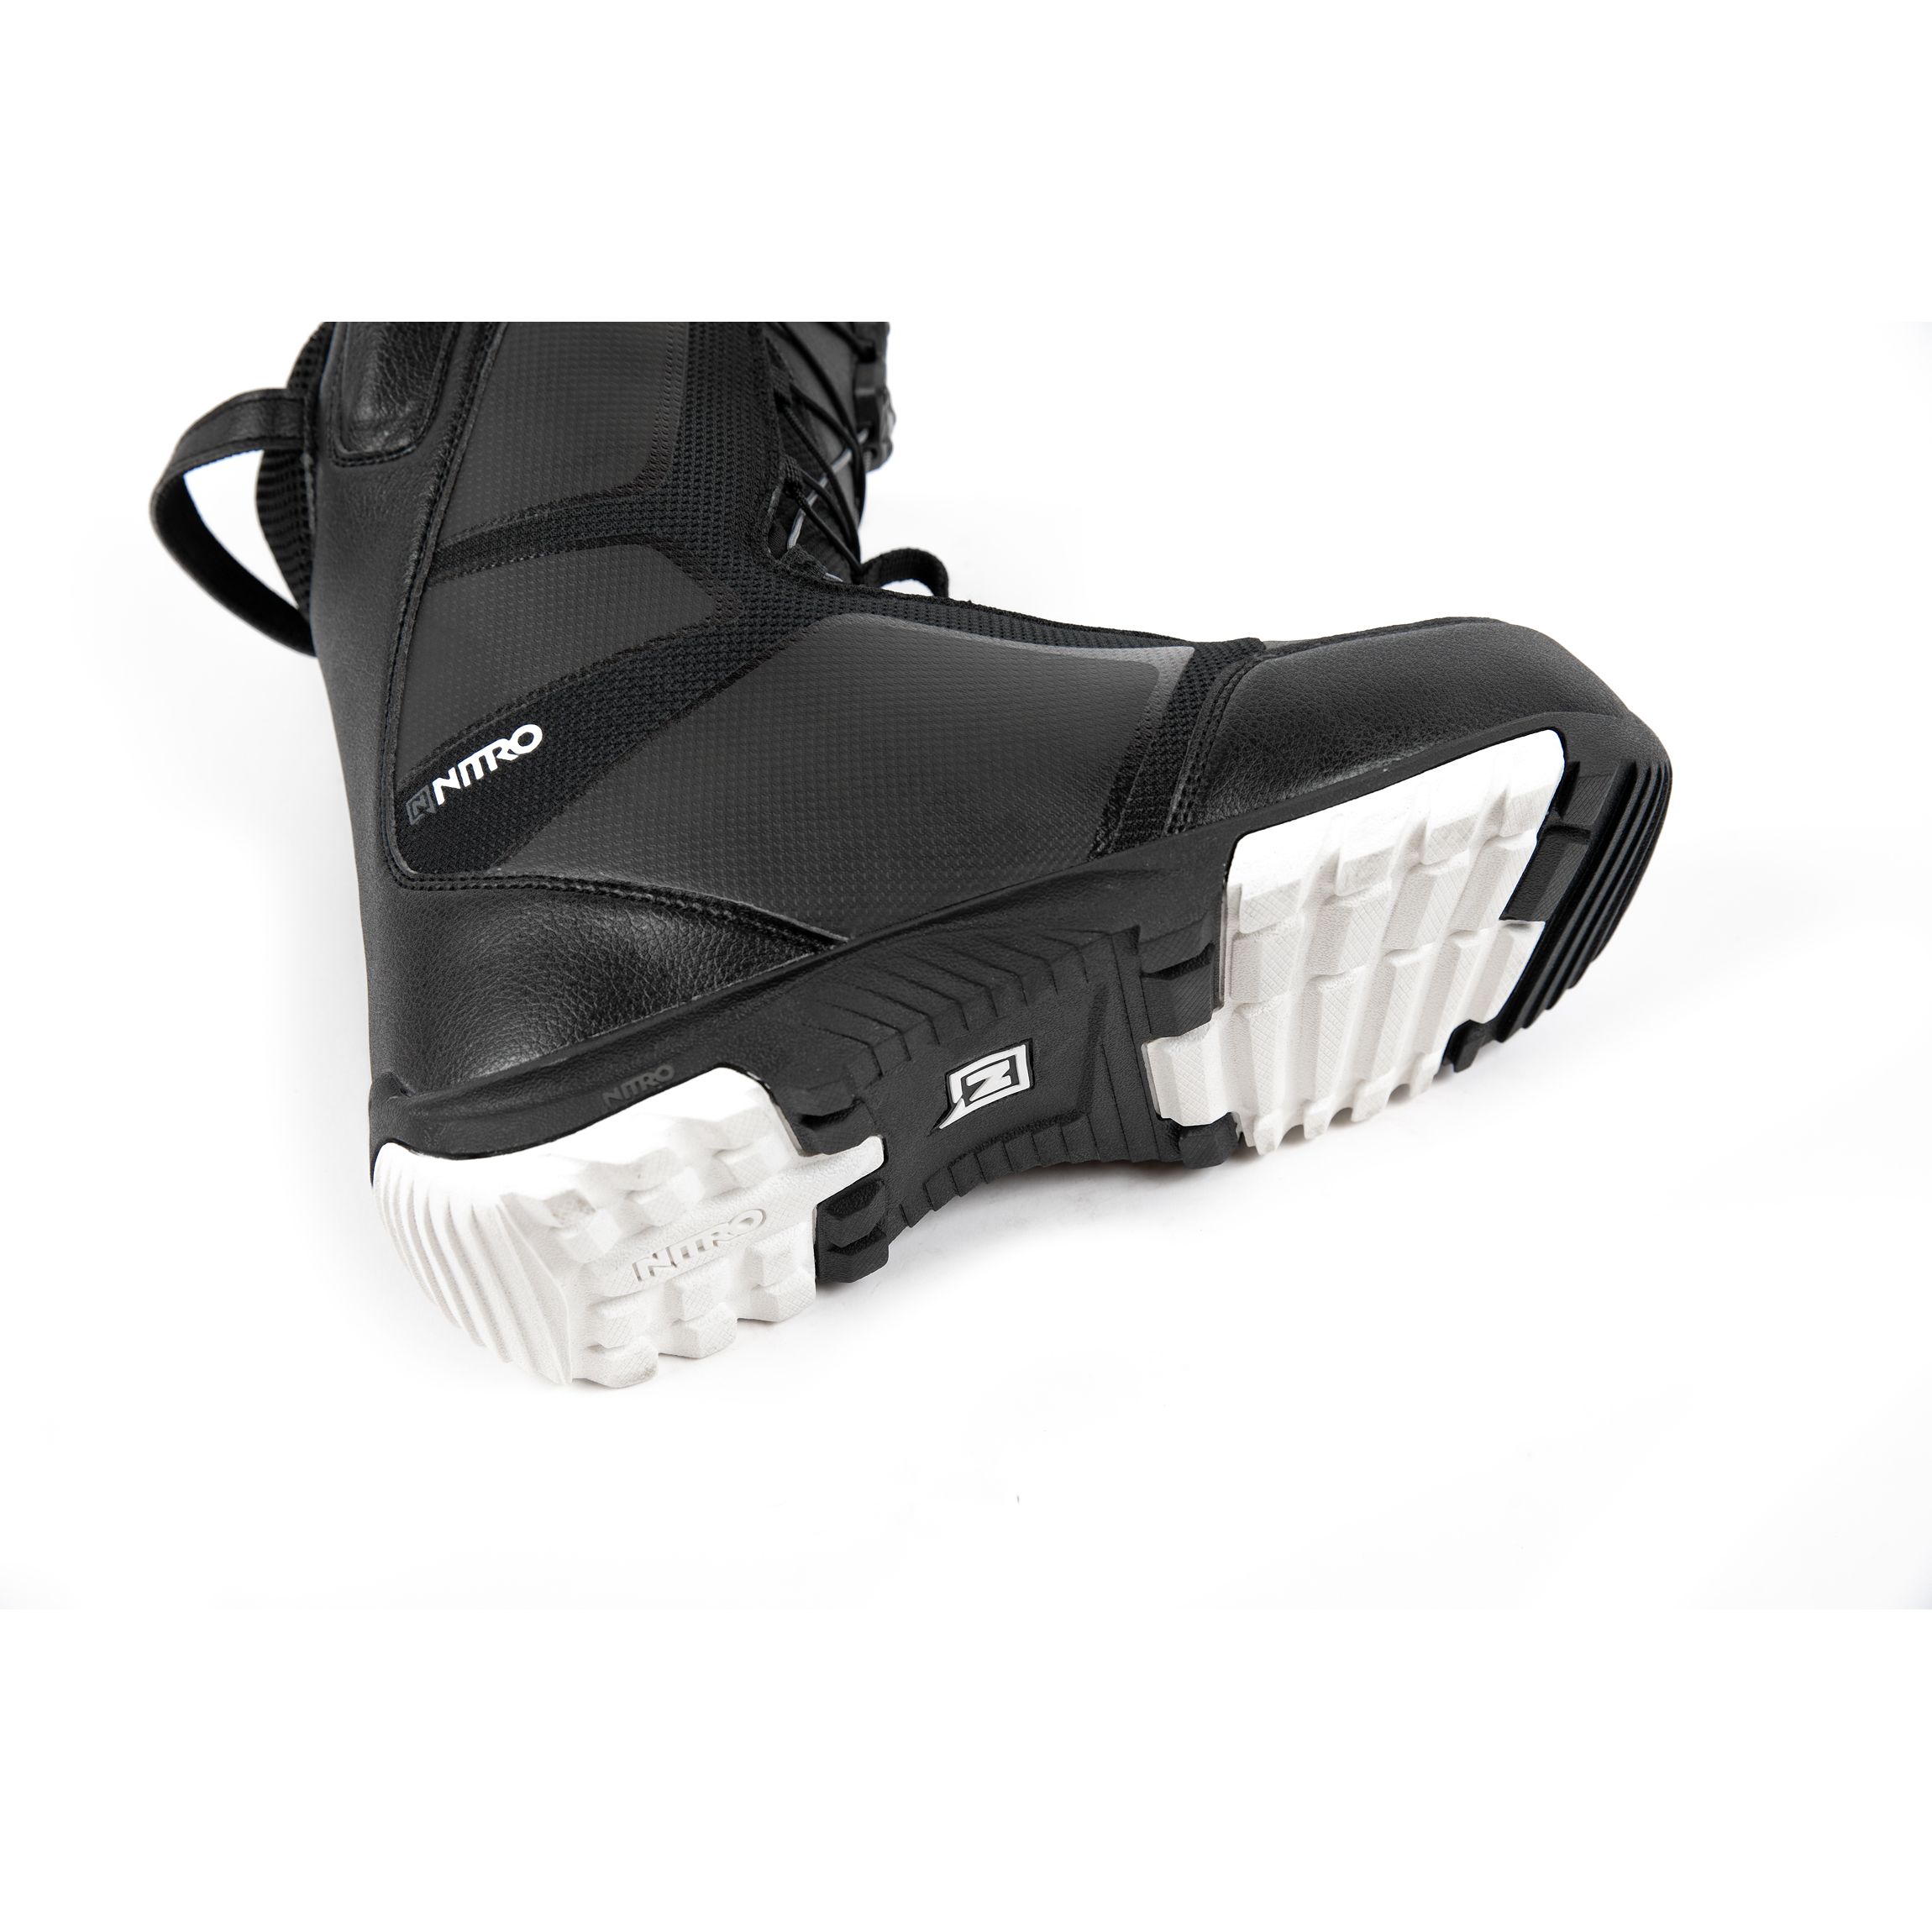 Boots Snowboard -  nitro Sentinel TLS